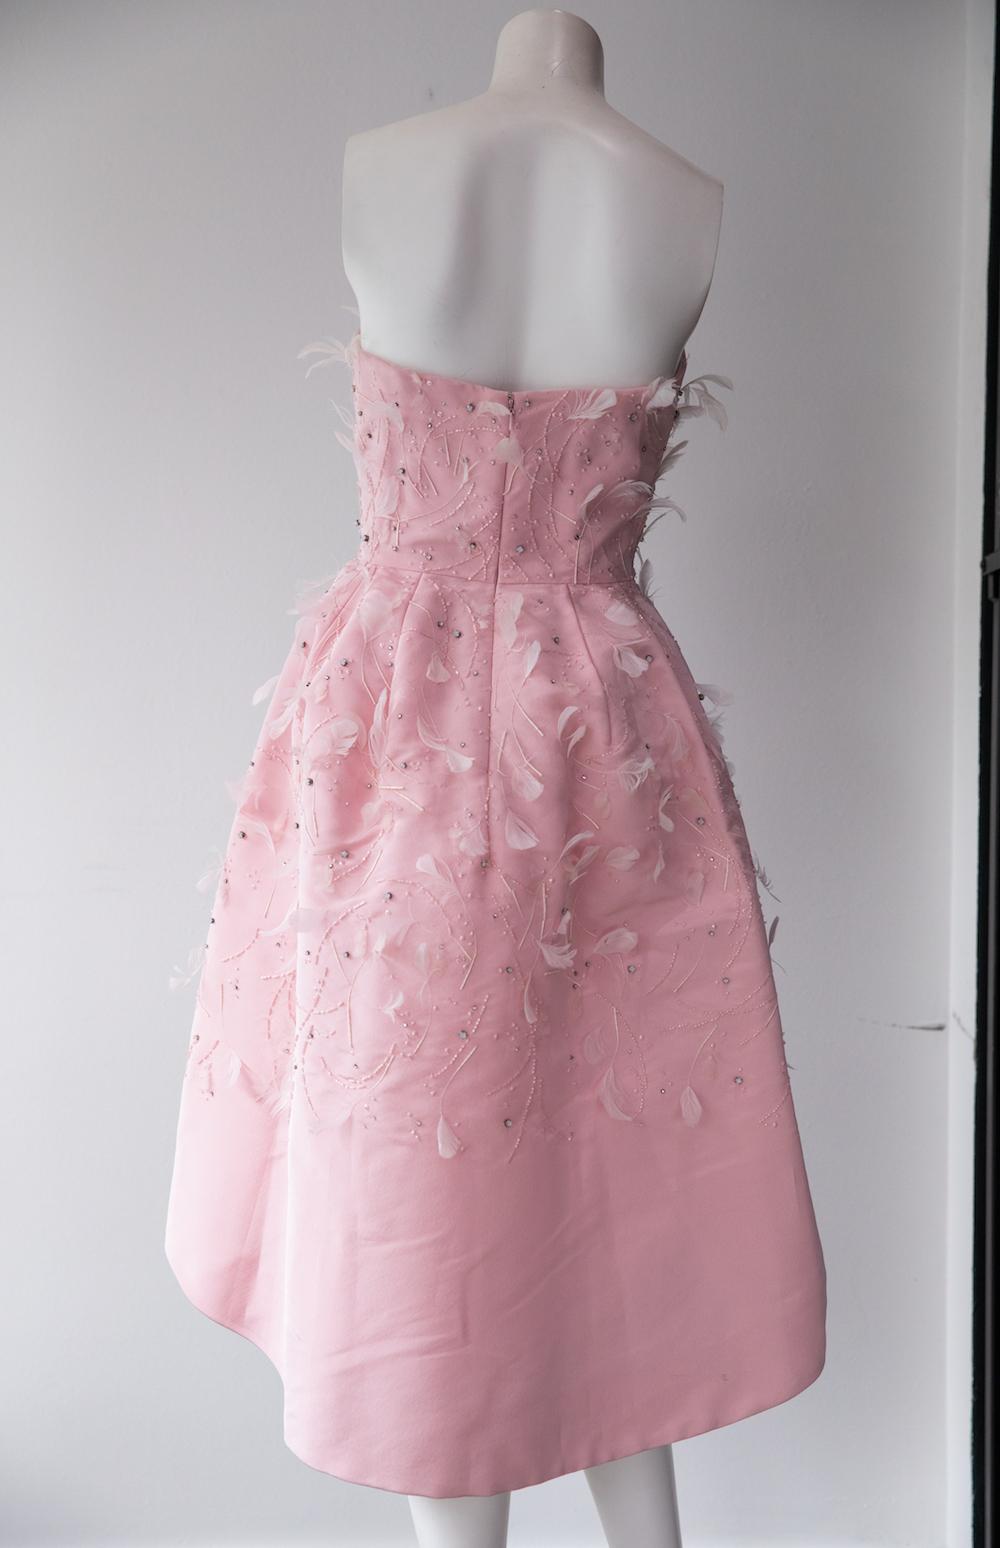 Robe à jupe intégrale rose layette d'Oscar De La Renta. Cette robe de soirée sans bretelles et à jupe ample arrive au genou. Il rappelle le glamour des années 1950 avec ses plumes roses coordonnées et ses perles sur l'ensemble du corps, et il est